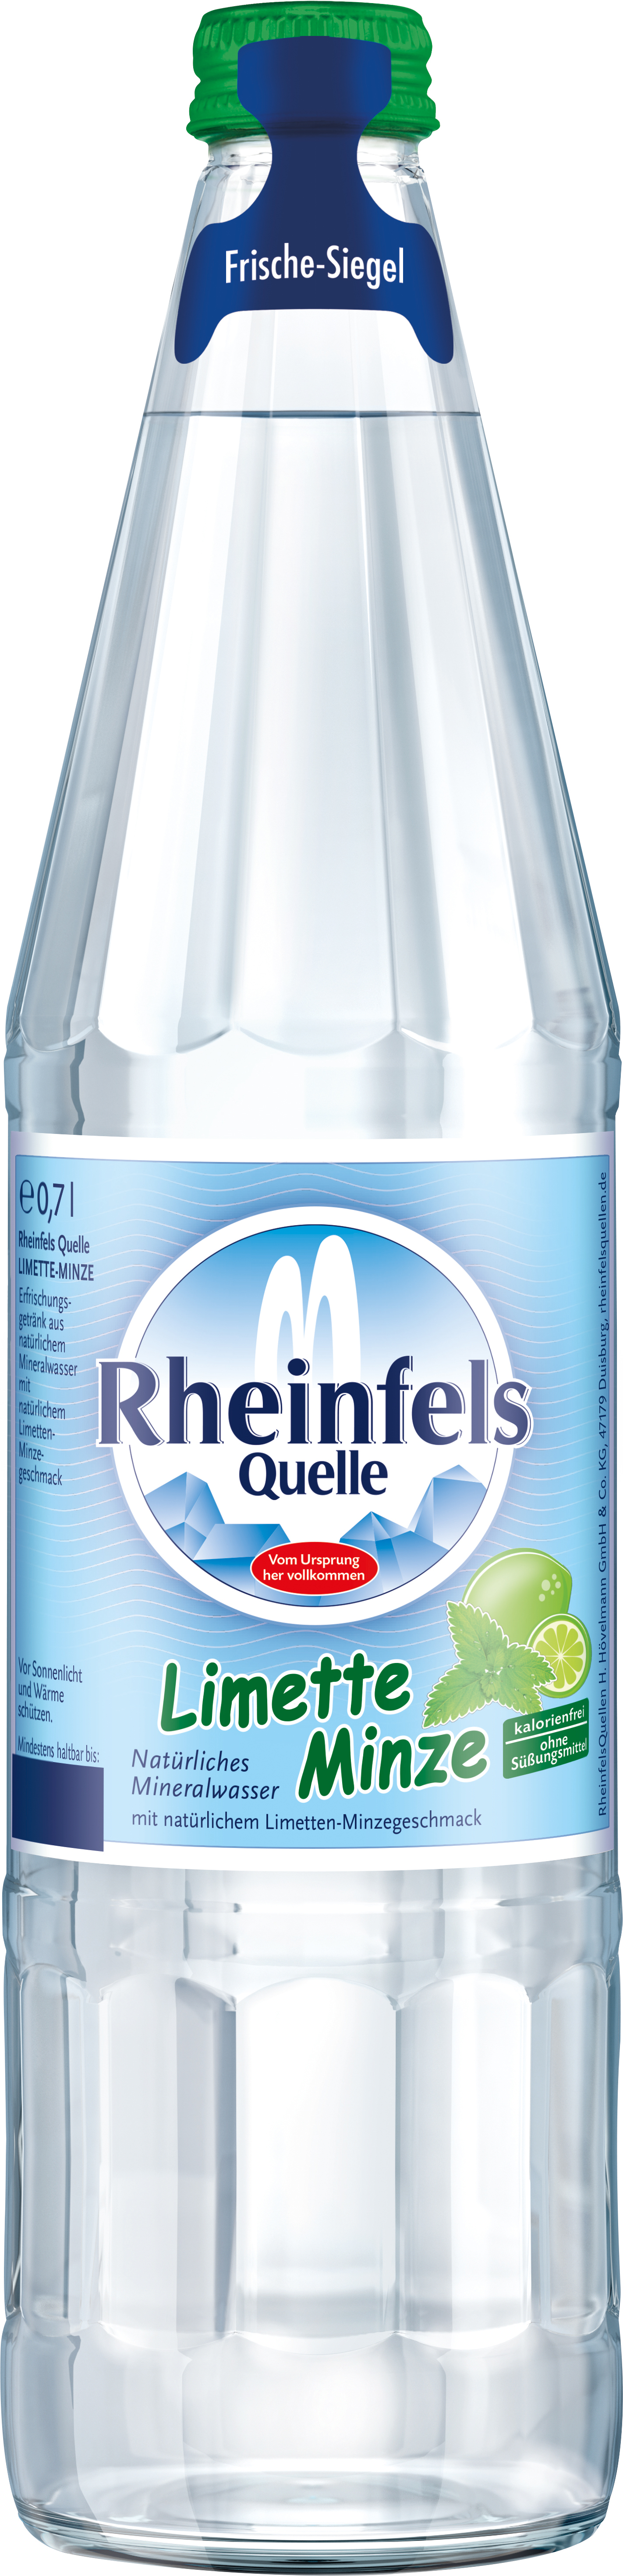 Rheinfels Limette Minze 12x0,7l (Glas) MW